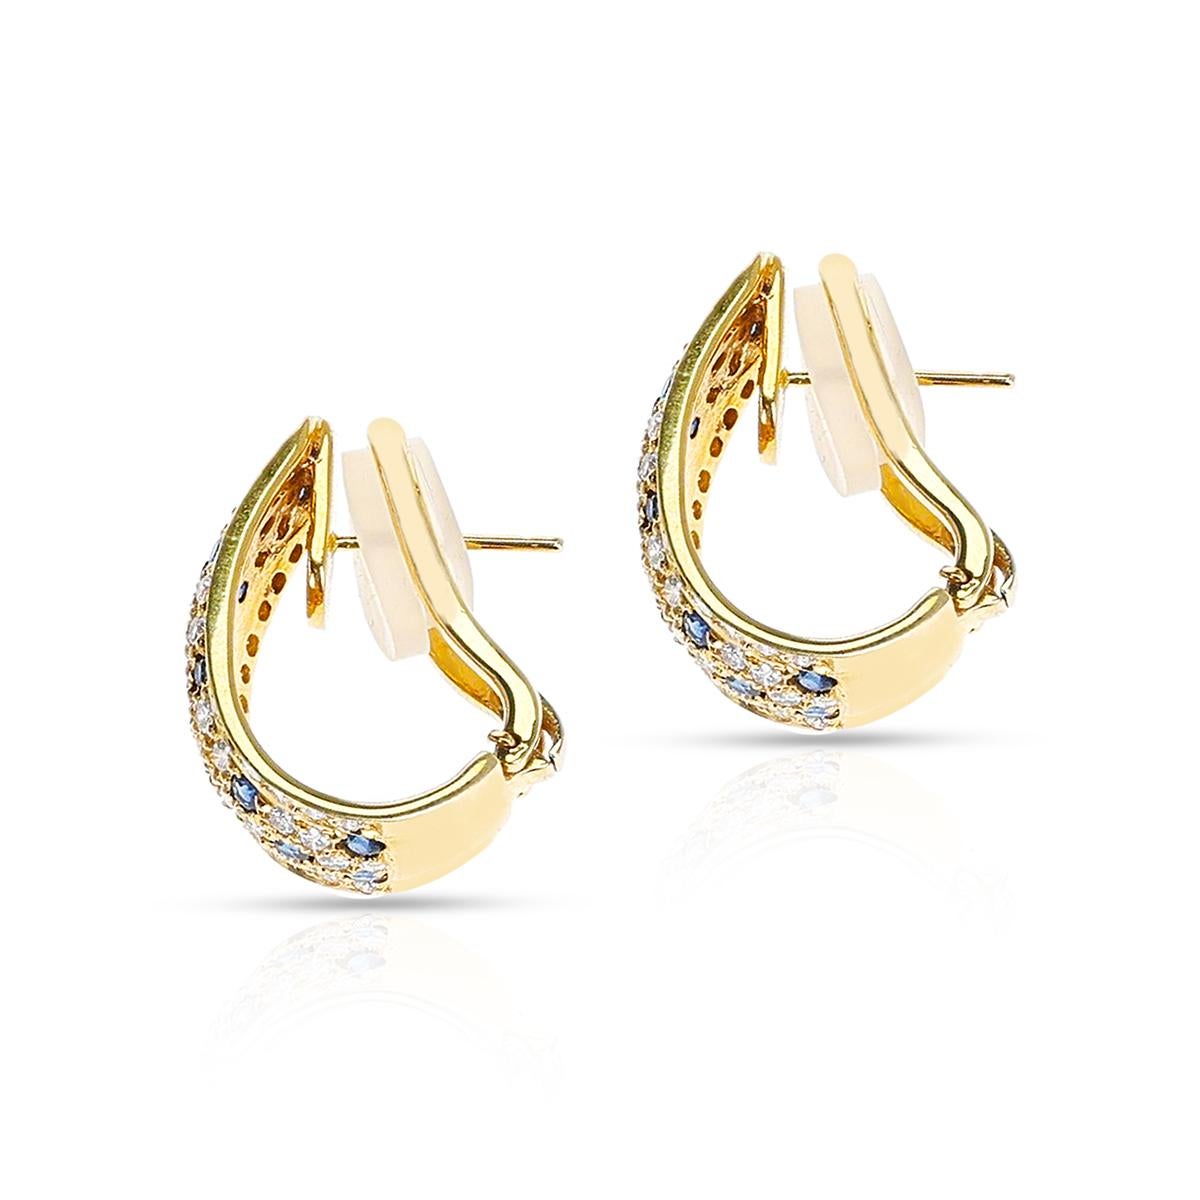 Ein Paar halbrunde Diamant- und runde Saphir-Ohrringe aus 18 Karat Gelbgold. Das Gewicht der Diamanten beträgt ca. 1,60 Karat und das Gewicht der Saphire ca. 1,50 Karat. Das Gesamtgewicht der Ohrringe beträgt 17,05 Gramm. Die Länge des Ohrrings